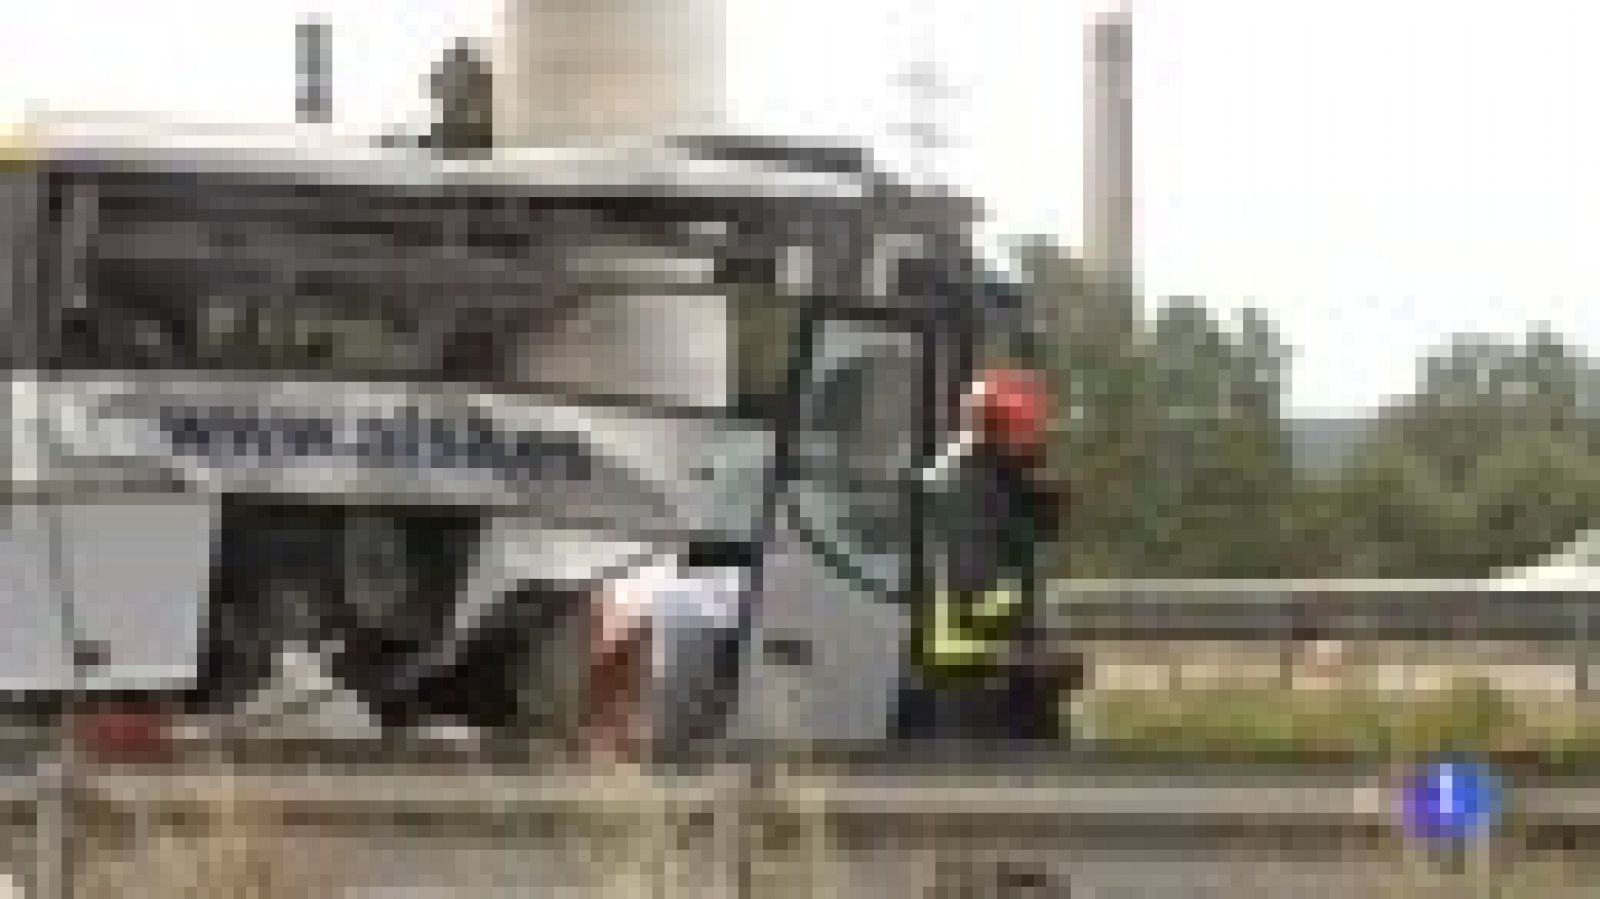 La investigación del accidente de autobús en Avilés apunta a un desvanecimiento del conductor